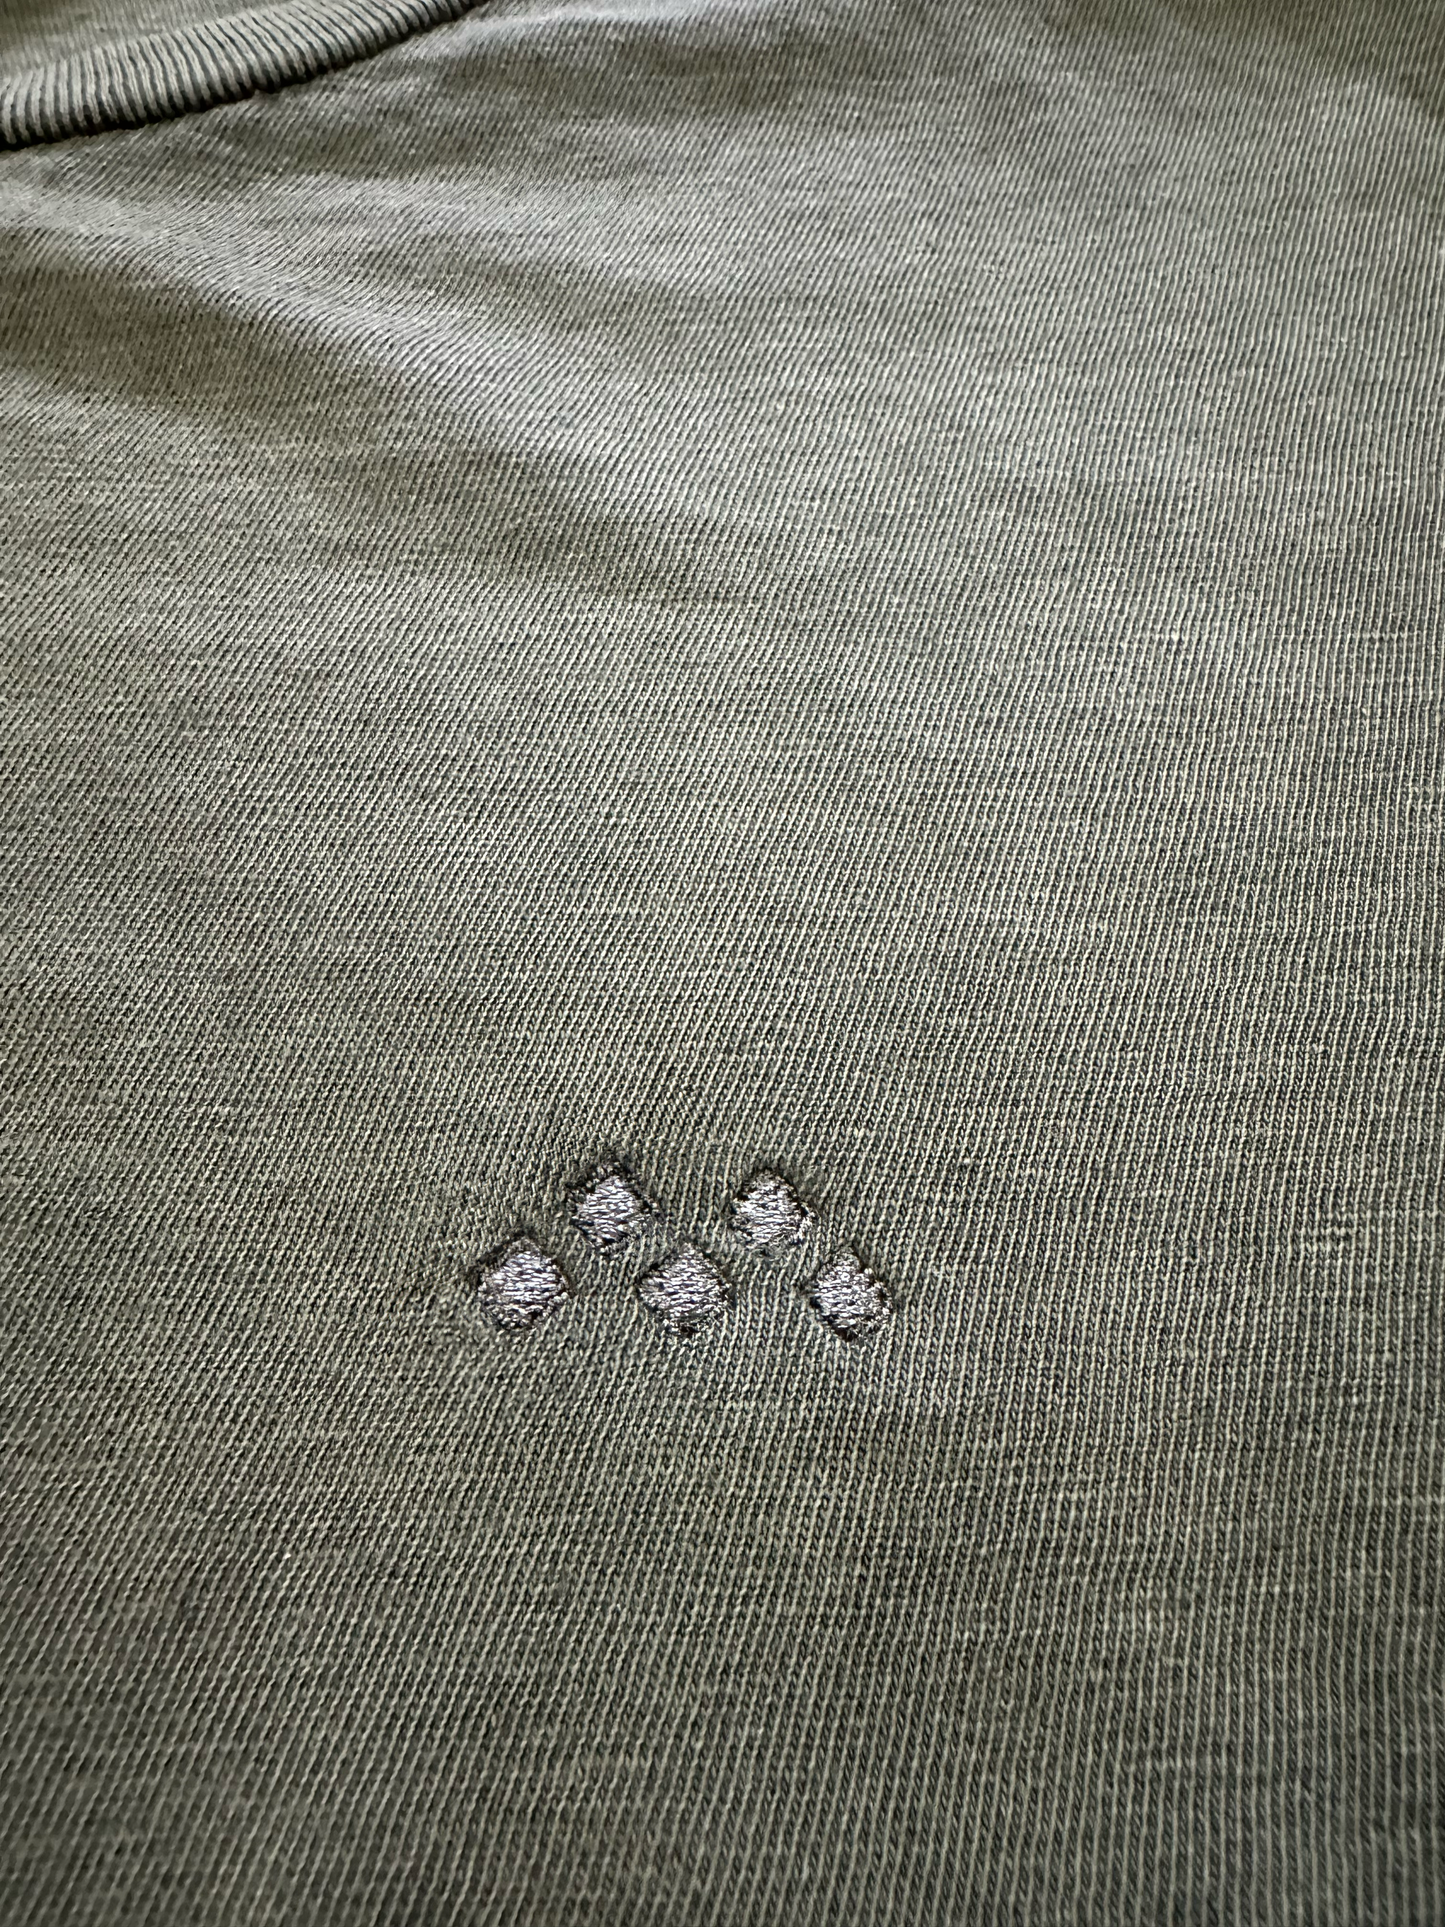 Embroidered Mineral Wash Vintage Crewneck T-Shirt “Olive Green”